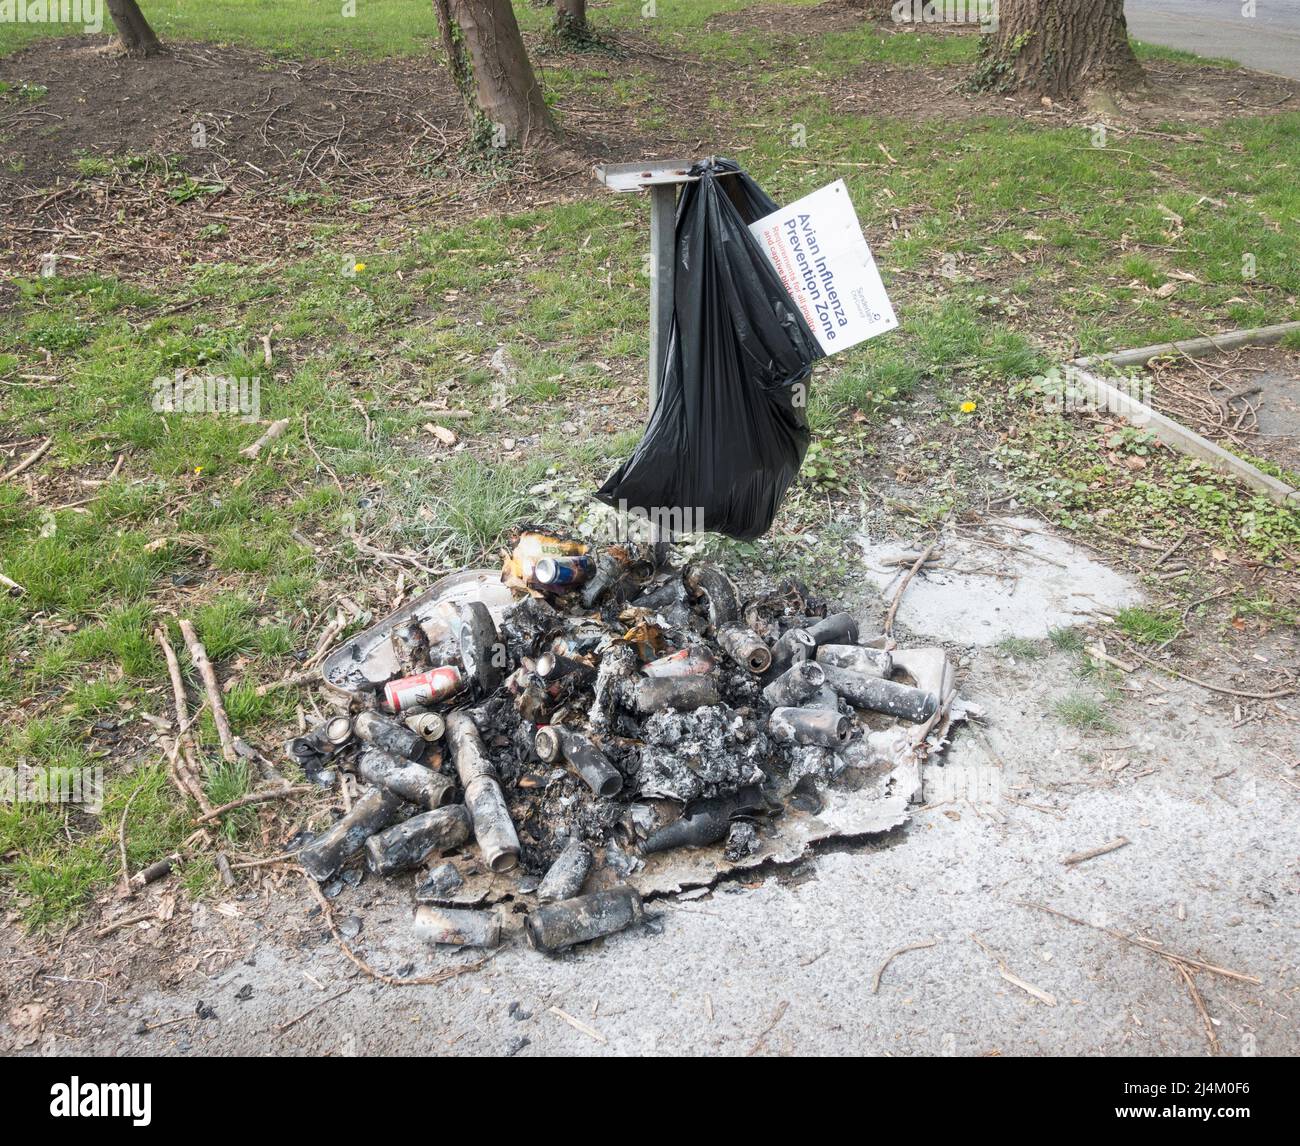 Une poubelle à roulettes brûlée par des vandales laissant les restes chargés du contenu sur le sol, Washington, nord-est de l'Angleterre, Royaume-Uni Banque D'Images